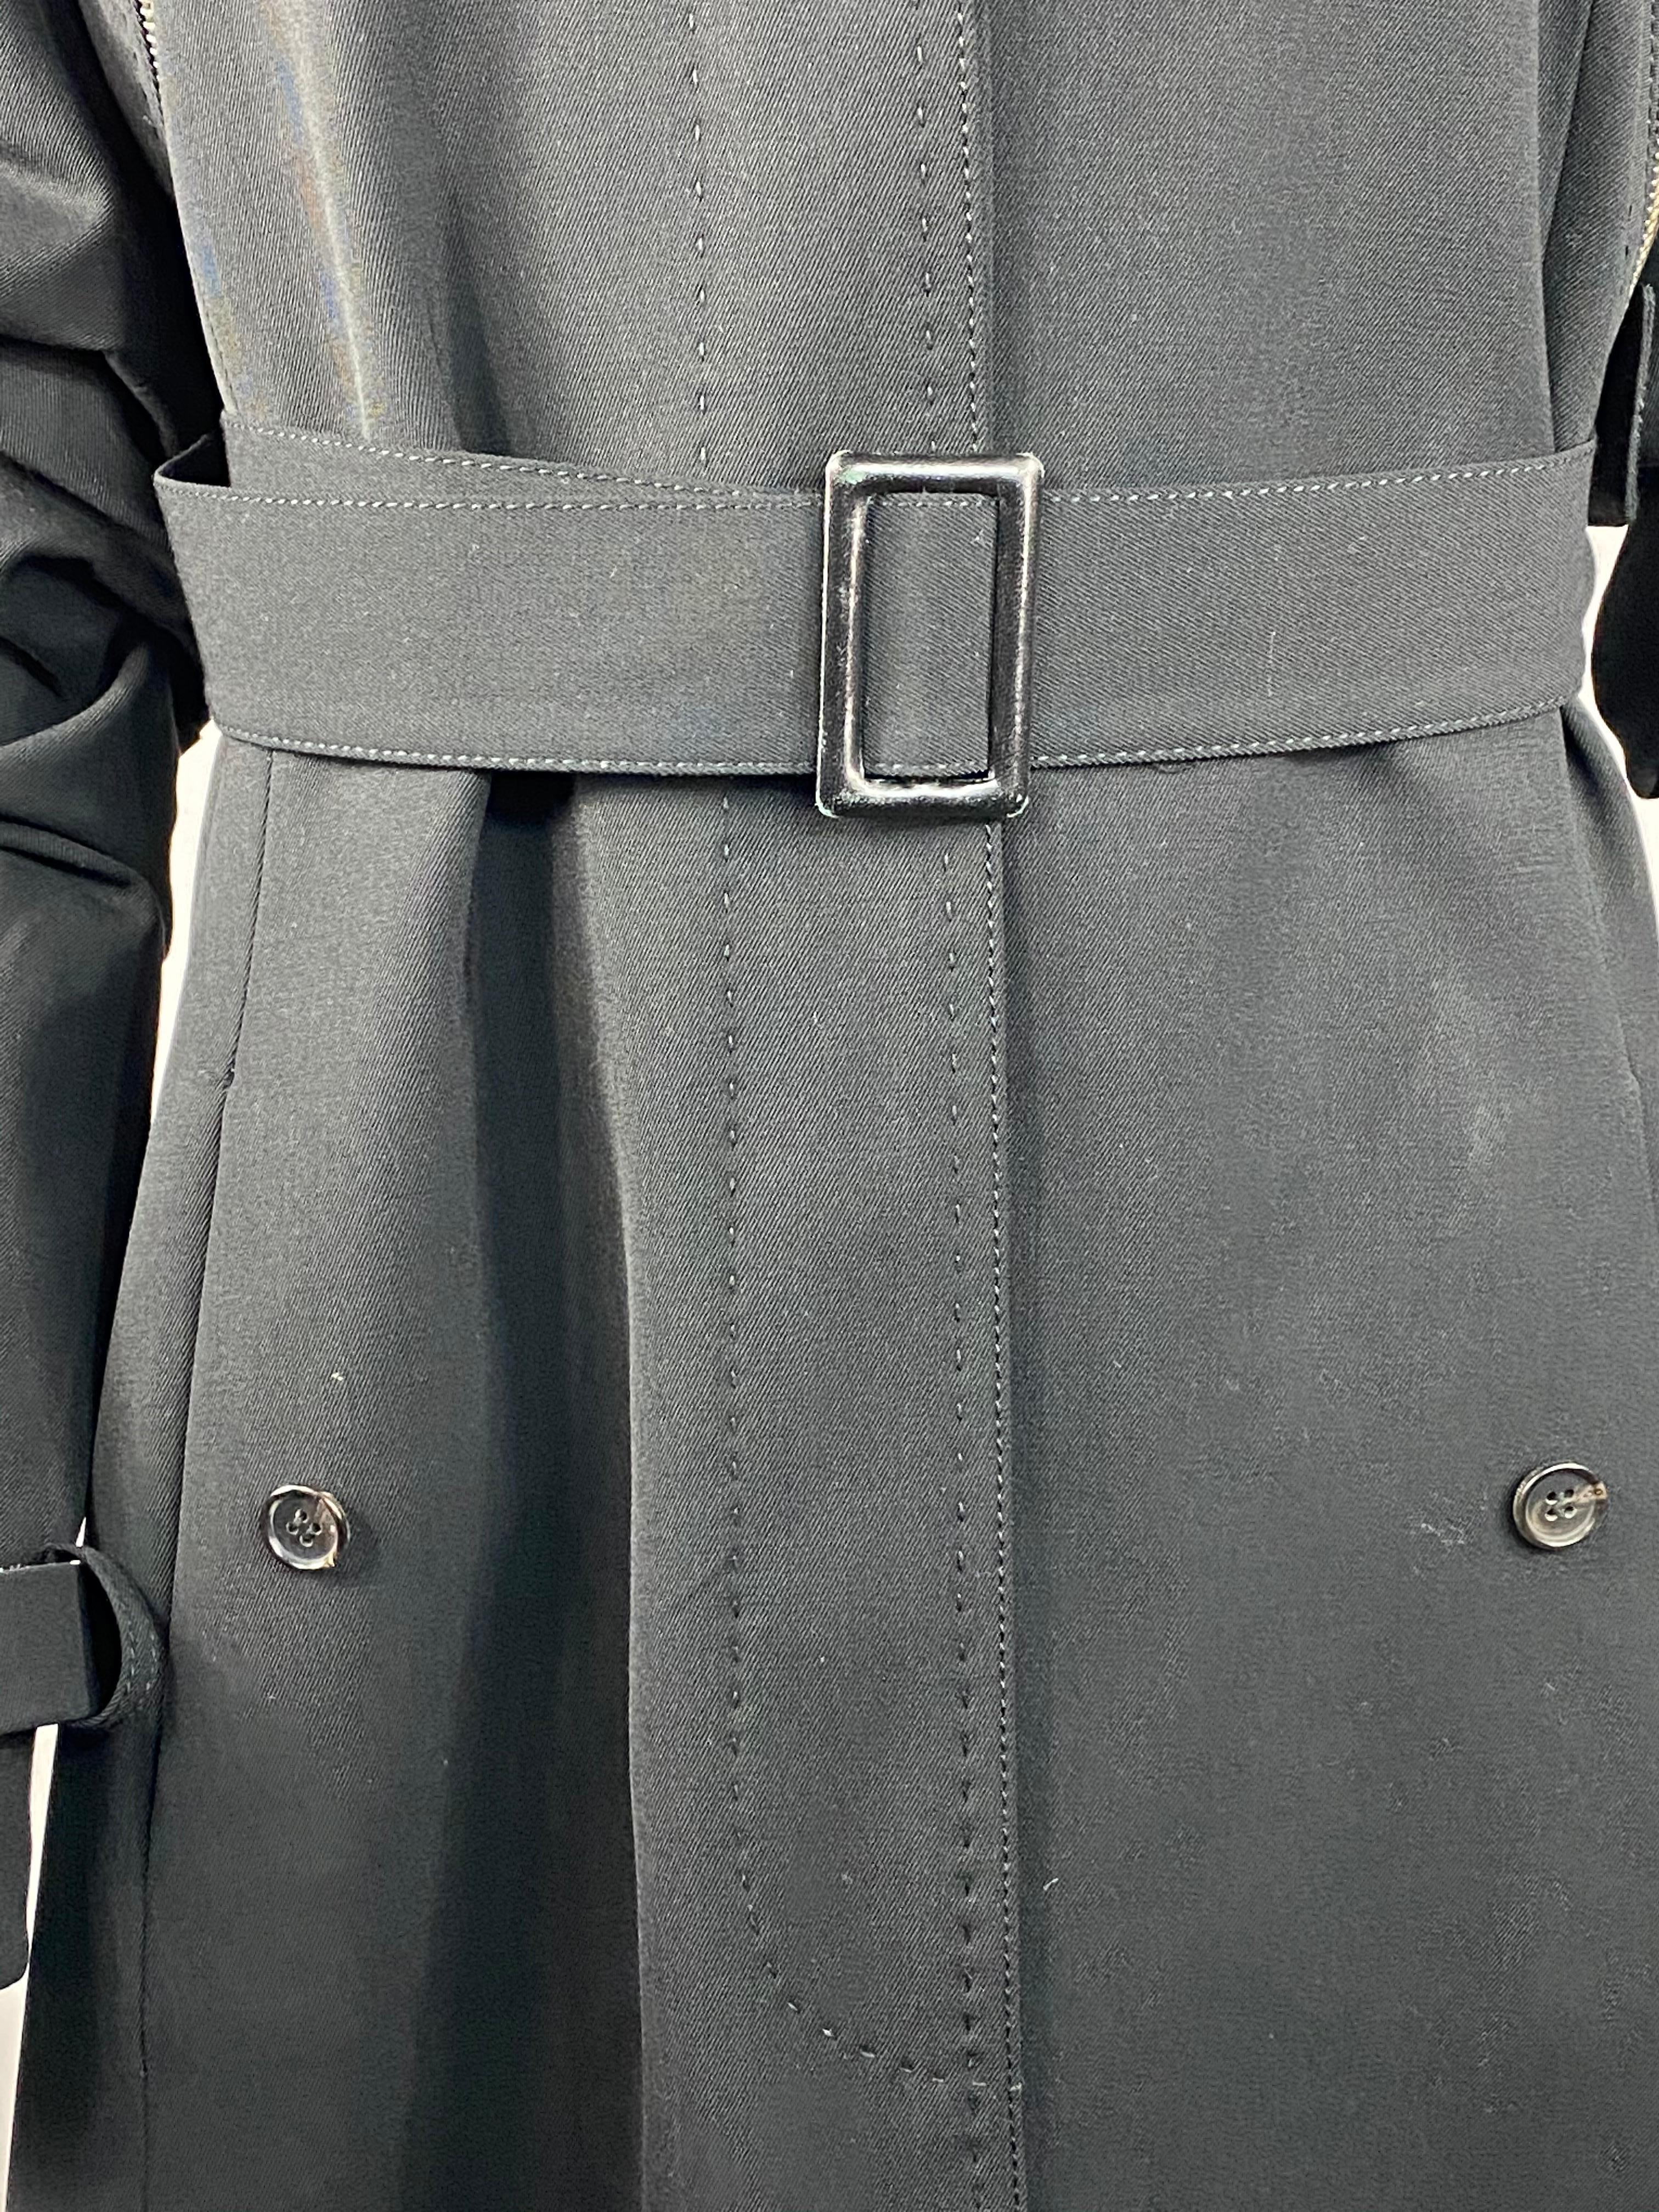 Gianfranco Ferre Black Wool Long Coat Jacket w/ Belt Size 44 For Sale 9